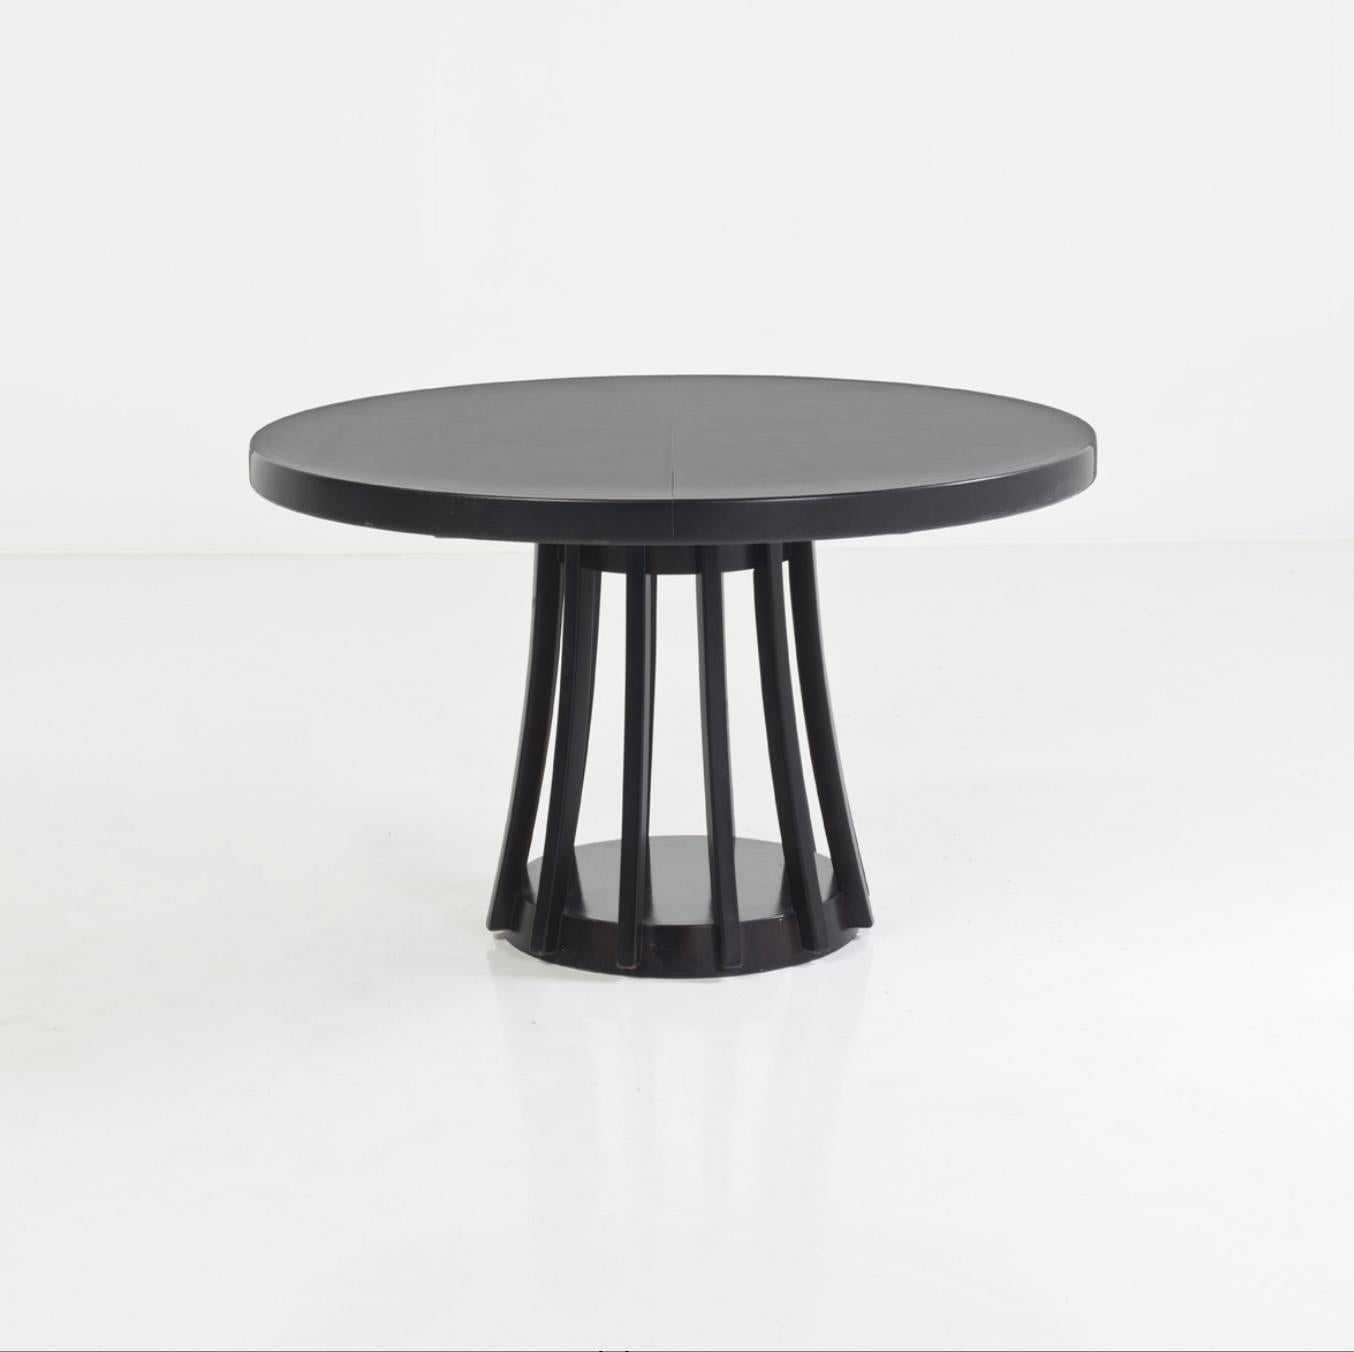 Der von dem berühmten italienischen Designer Angelo Mangiarotti entworfene Ausziehtisch S11 ist eine echte Ikone des Stils und des guten Geschmacks.

Die runde Form des Tisches schafft ein einladendes und intimes Esserlebnis. Außerdem kann der Tisch